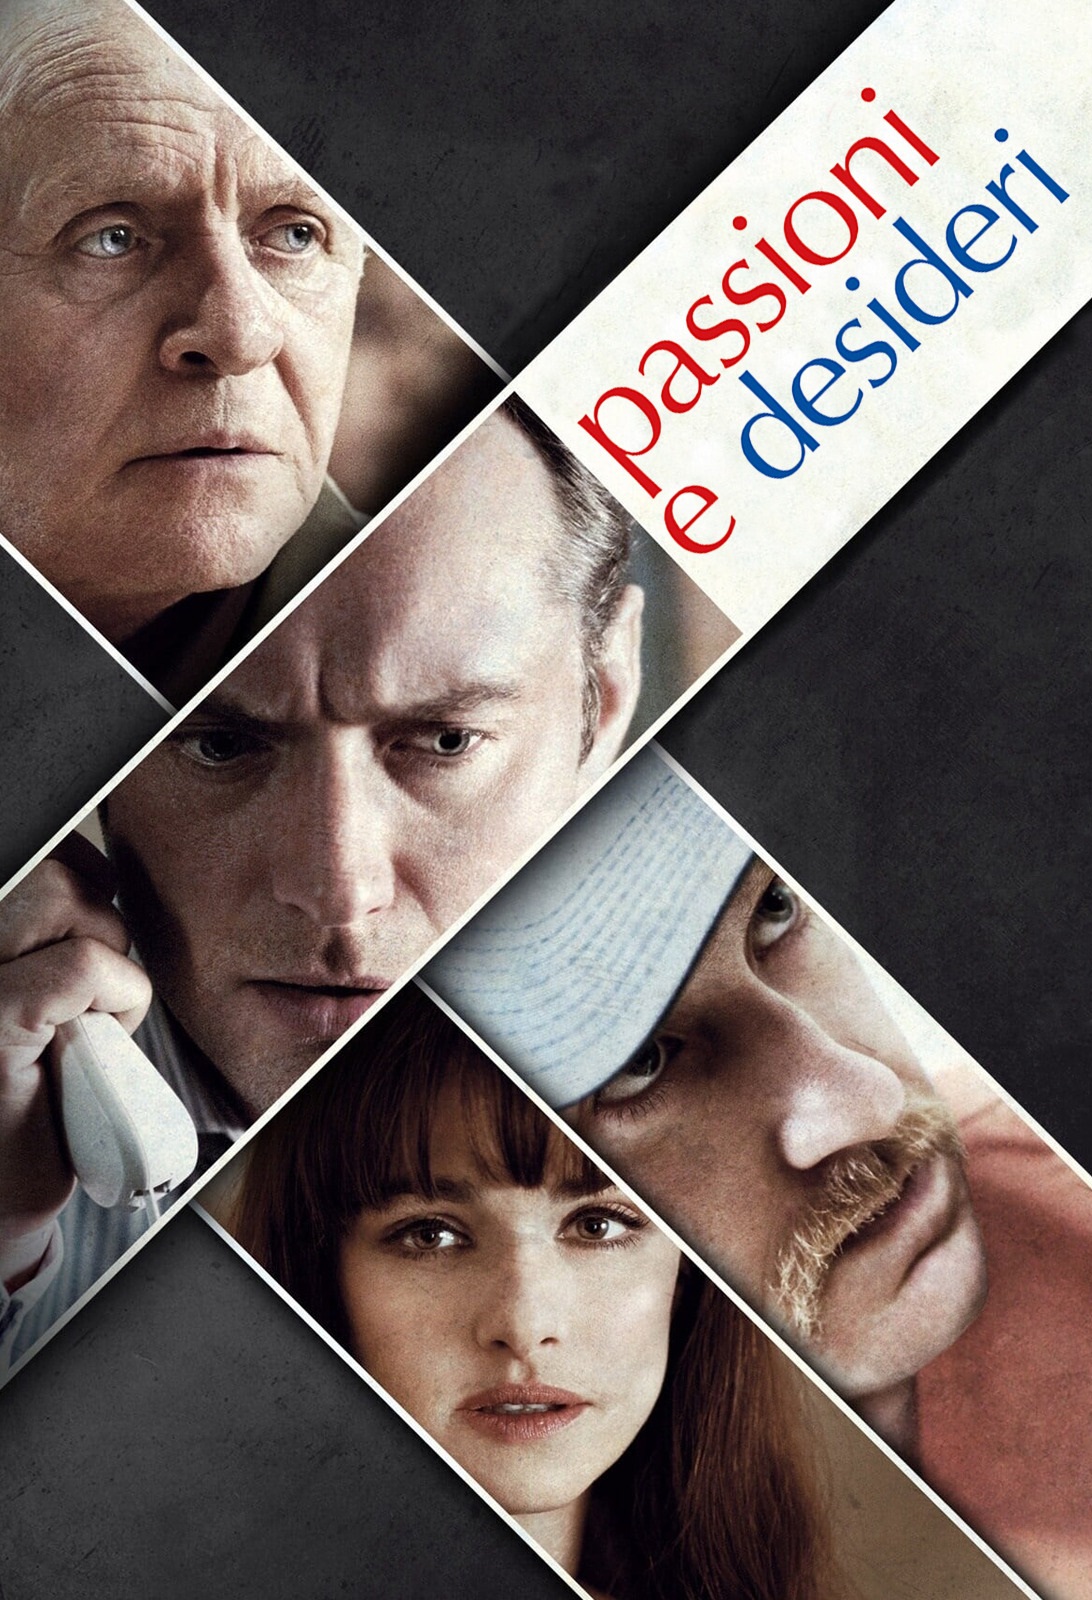 Passioni e desideri [HD] (2013)